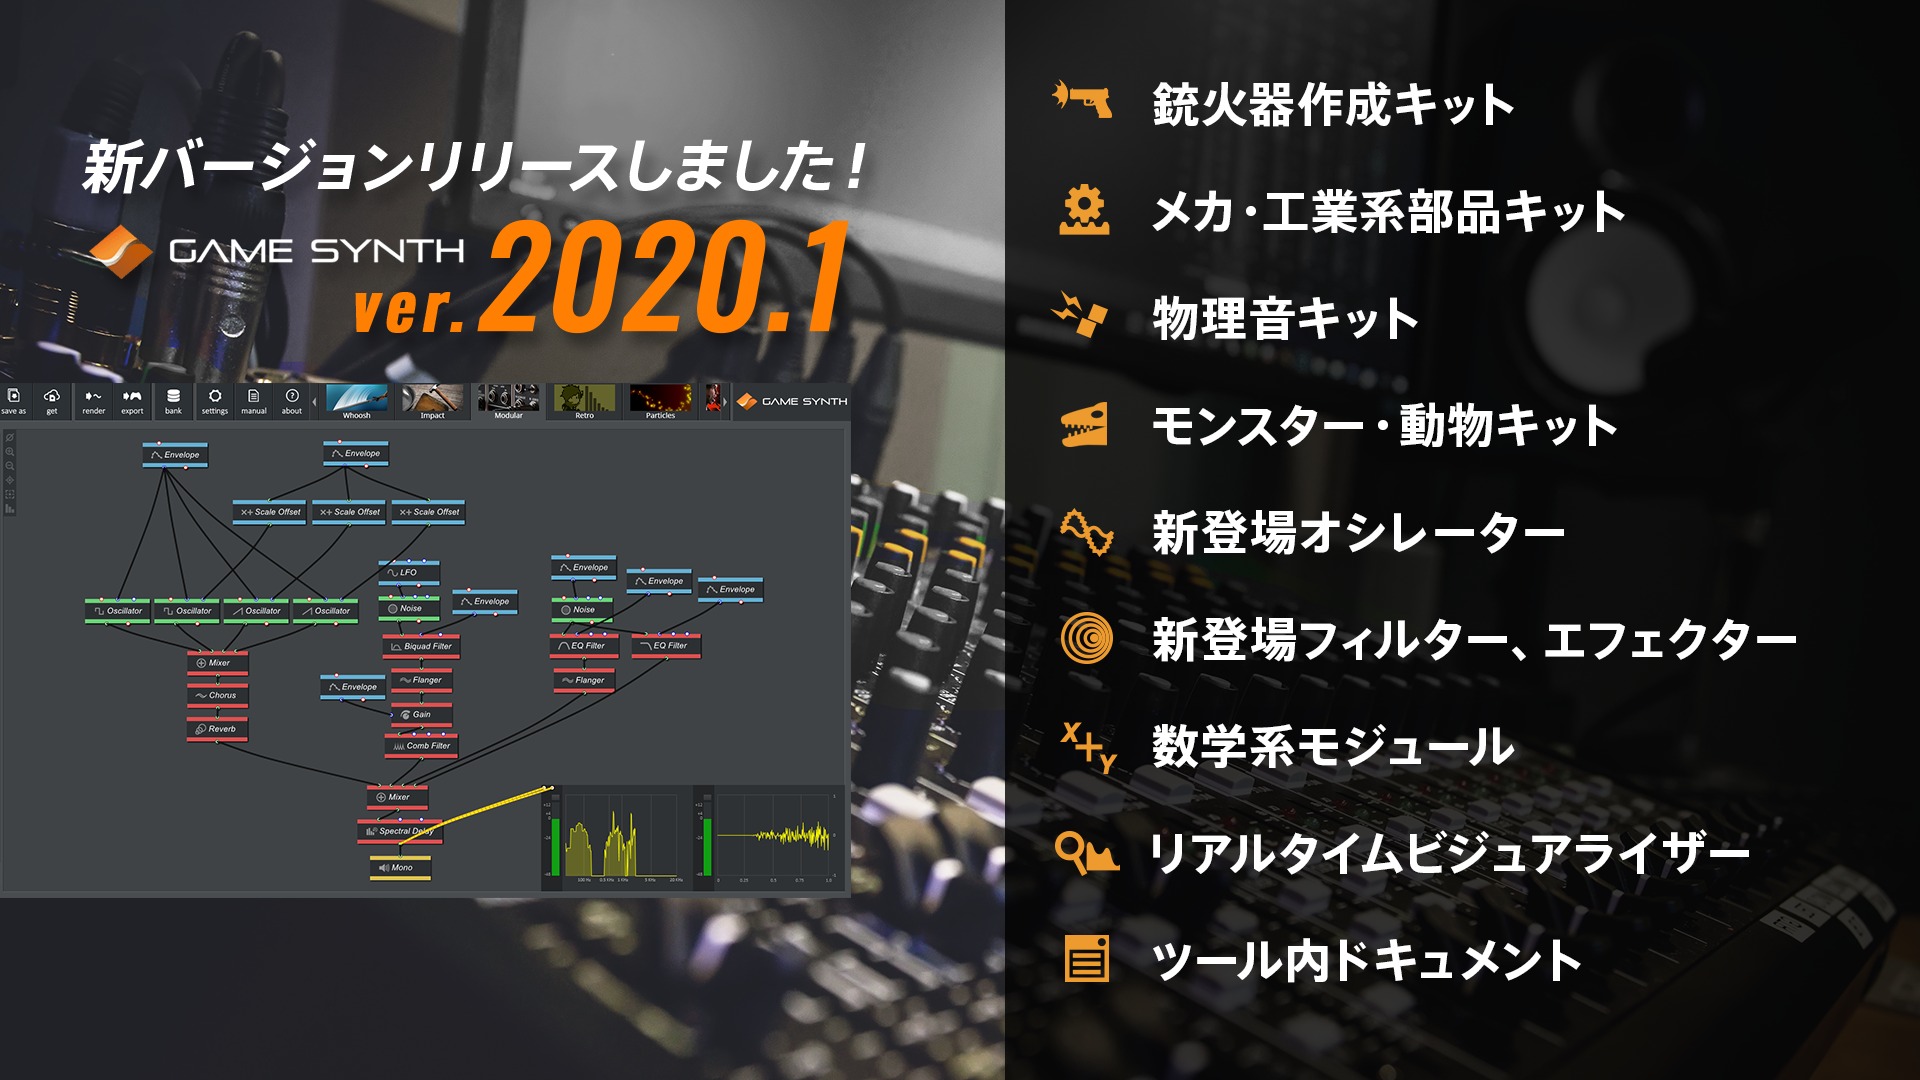 スクリーンショット集 Tsugi プロシージャル効果音作成ツール Gamesynth 最新版 1をリリース Gamesindustry Biz Japan Edition